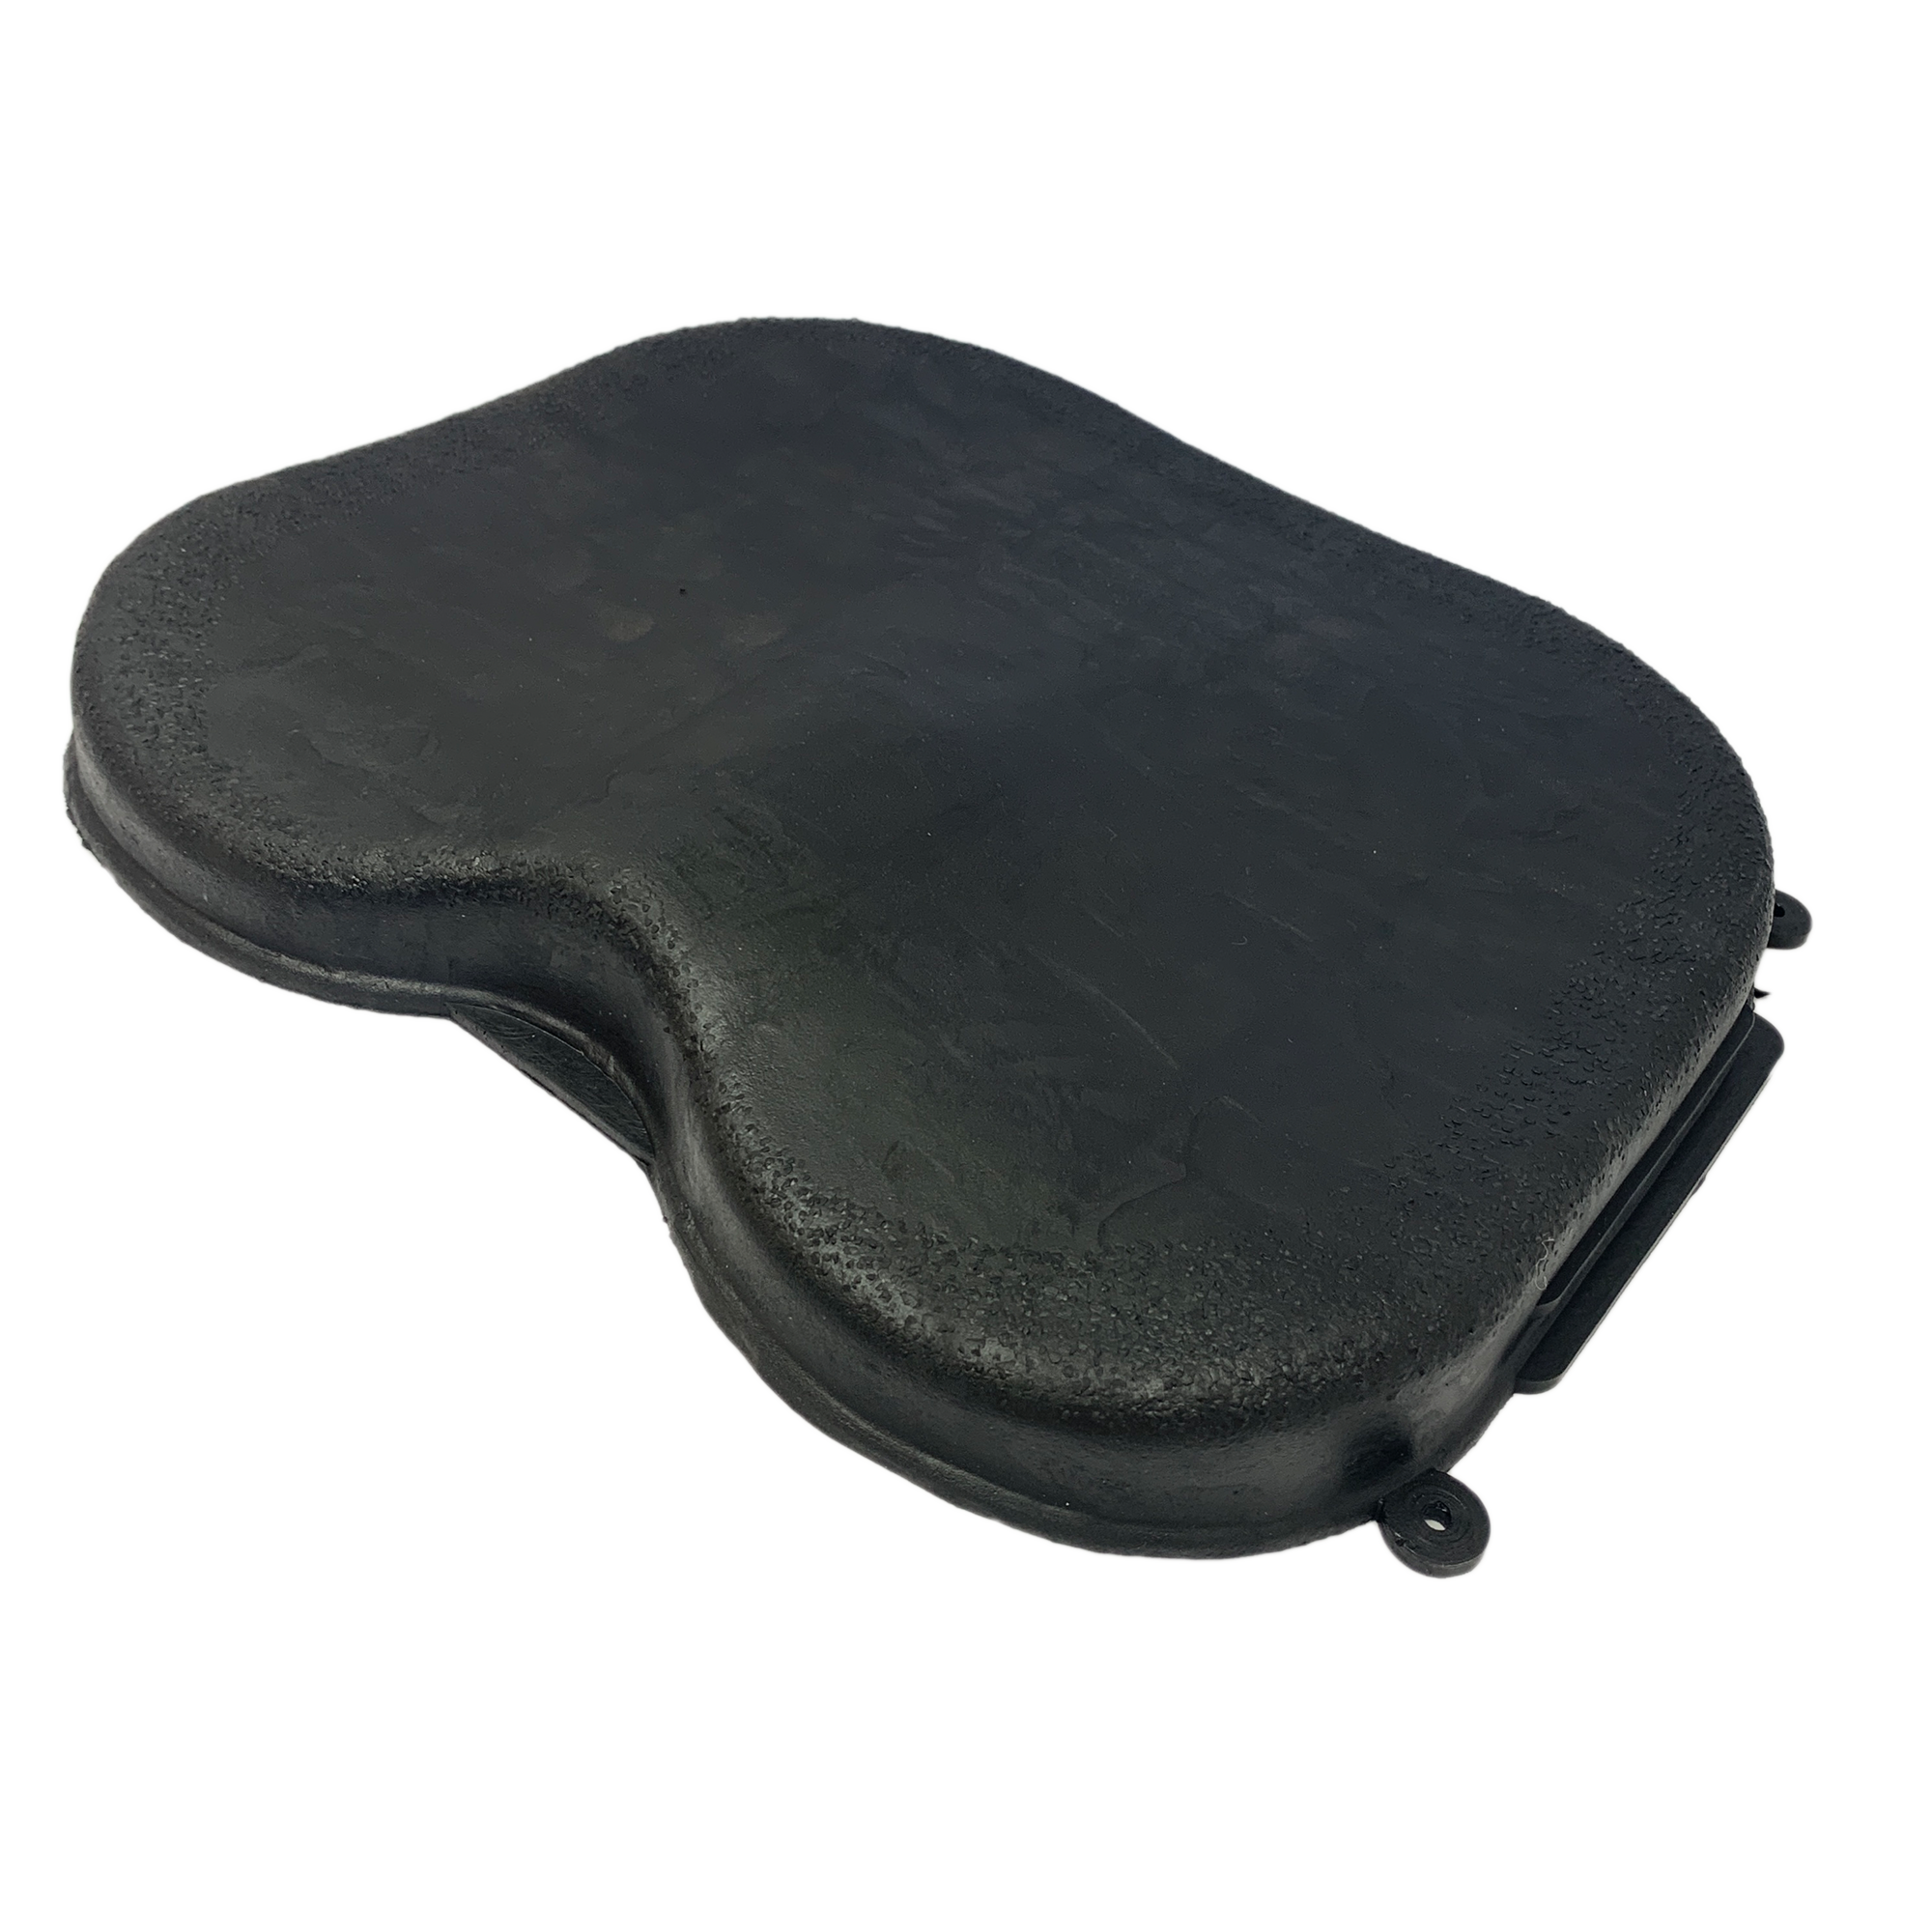 Kayak Foam Seat Pad